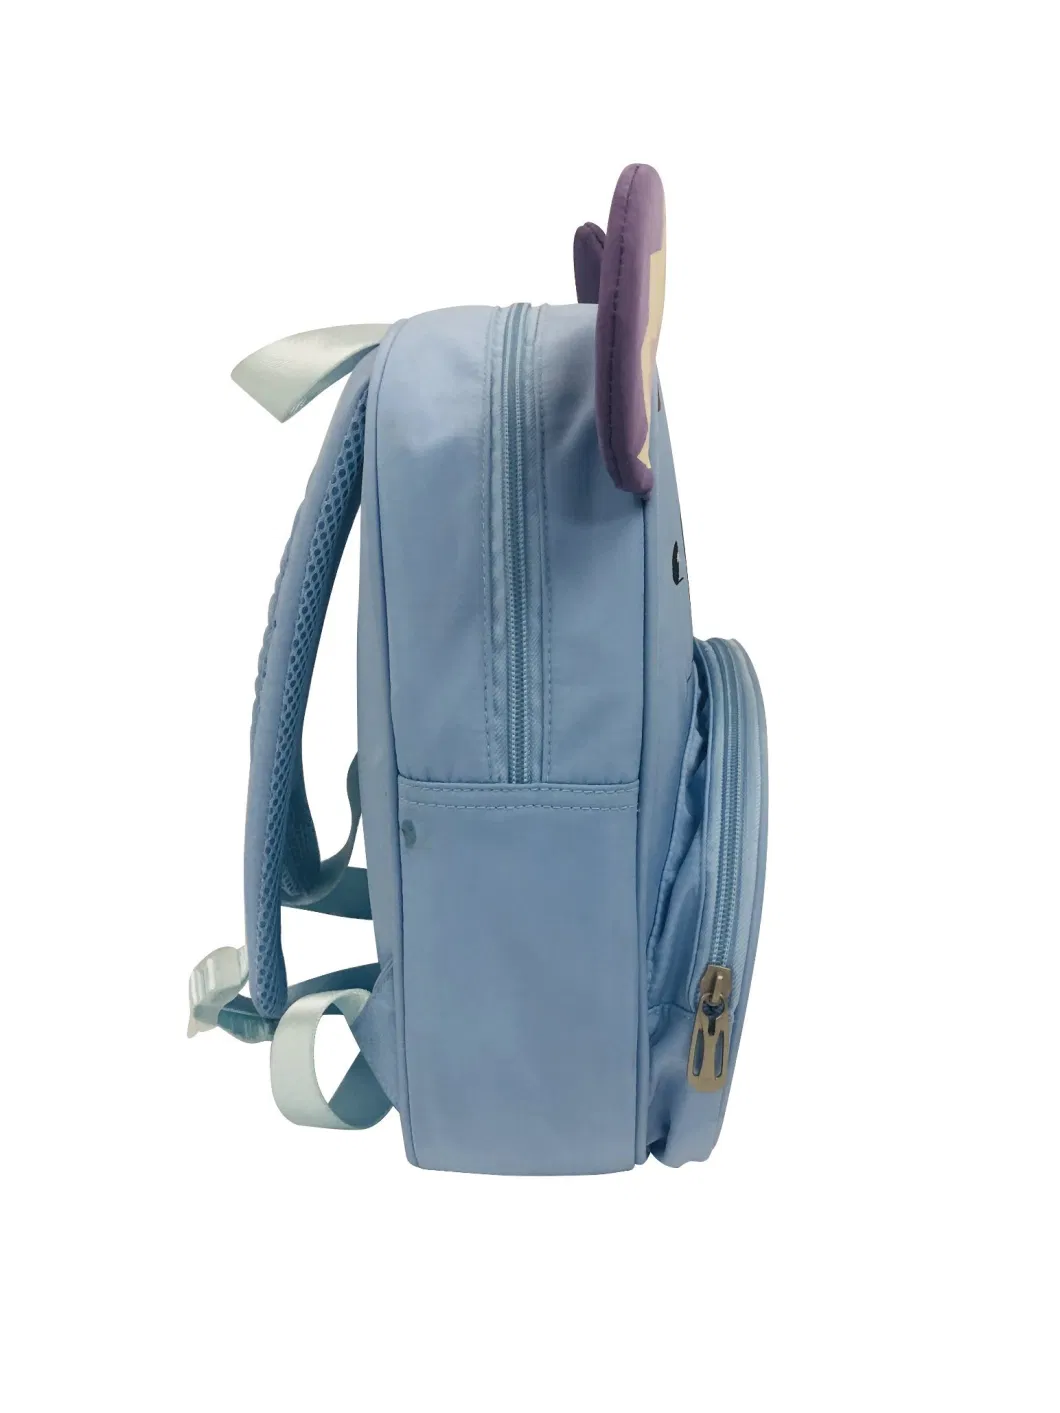 High Quality Stylish Little Koala Girl Kids Back Pack School Bag